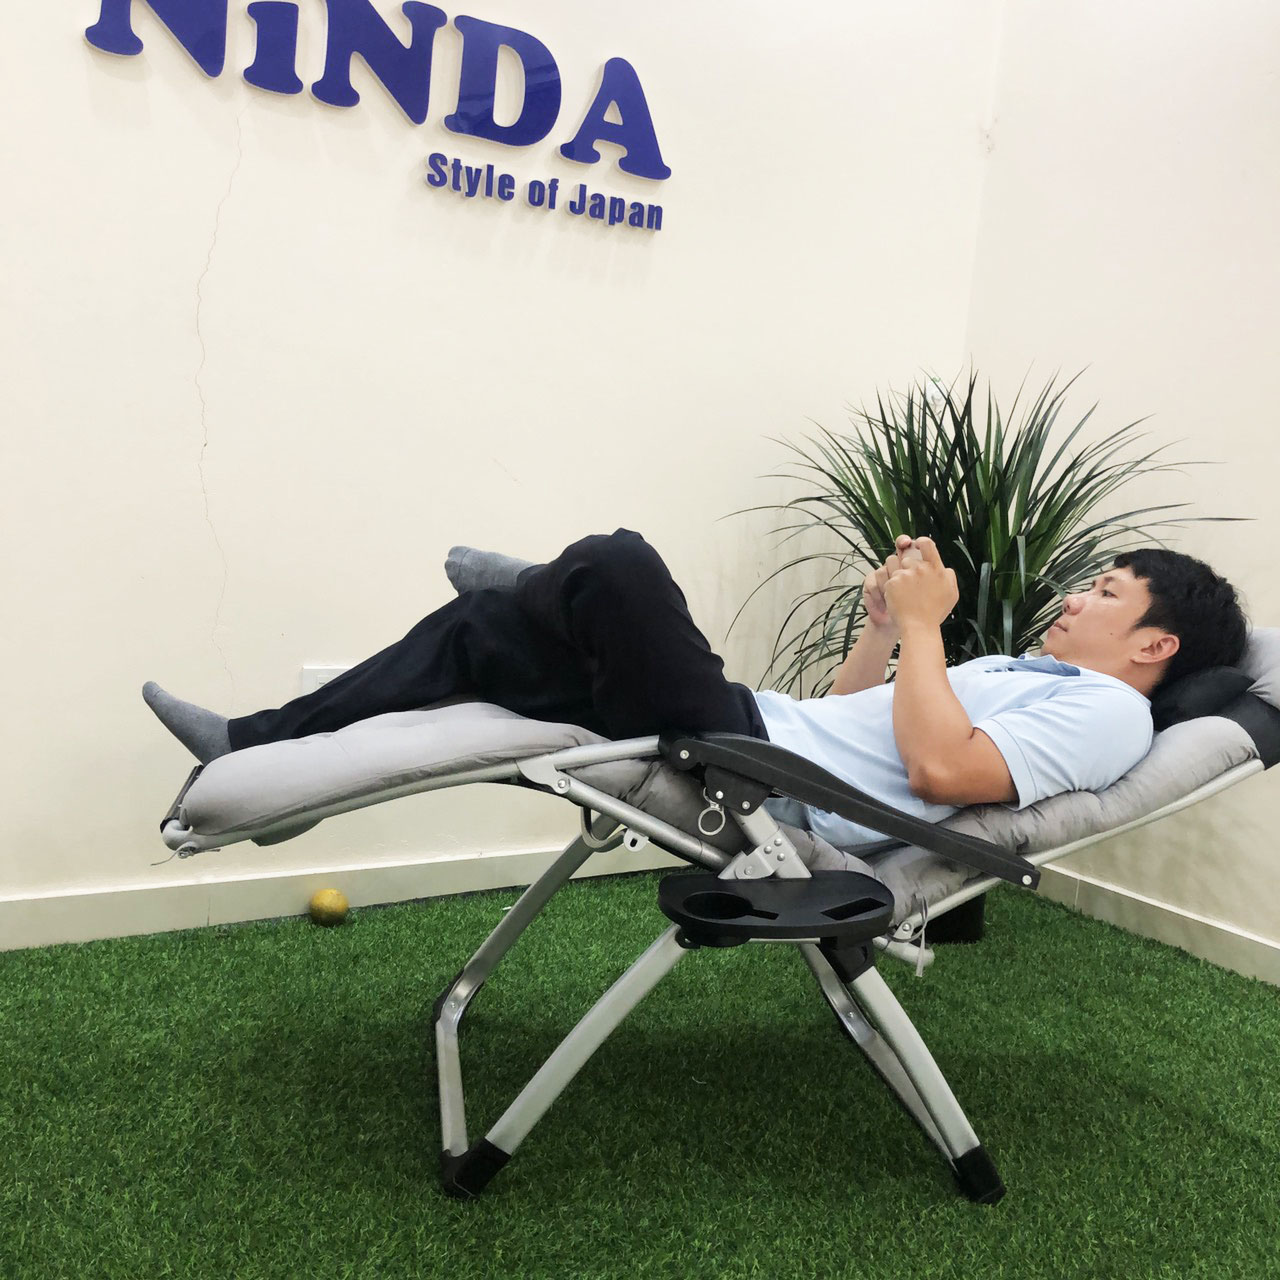 Ghế chơi game Mobile NiNDA có đệm, gối thư giãn ngả lưng nhiều tư thế- Hàng chính hãng